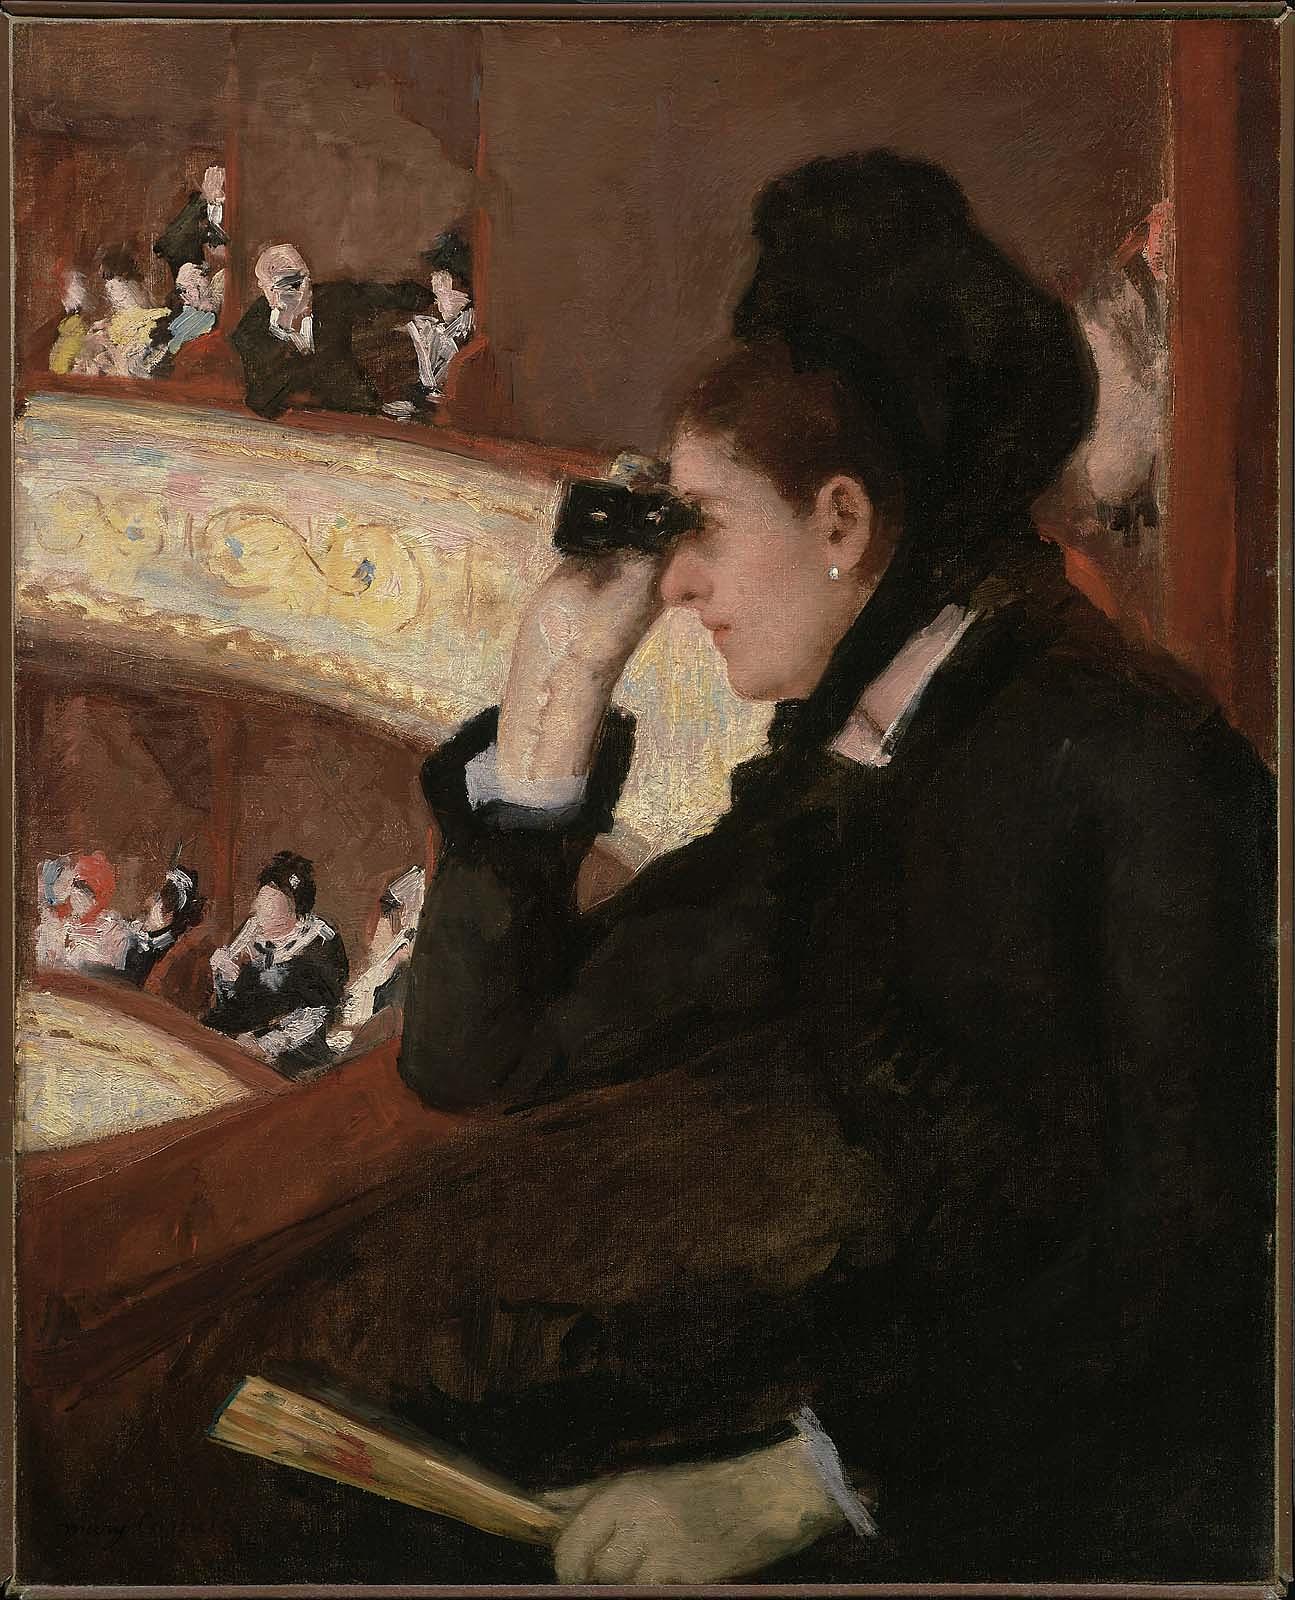 桟敷席にて by Mary Cassatt - 1878年 - 81.28 x 66.04 cm 